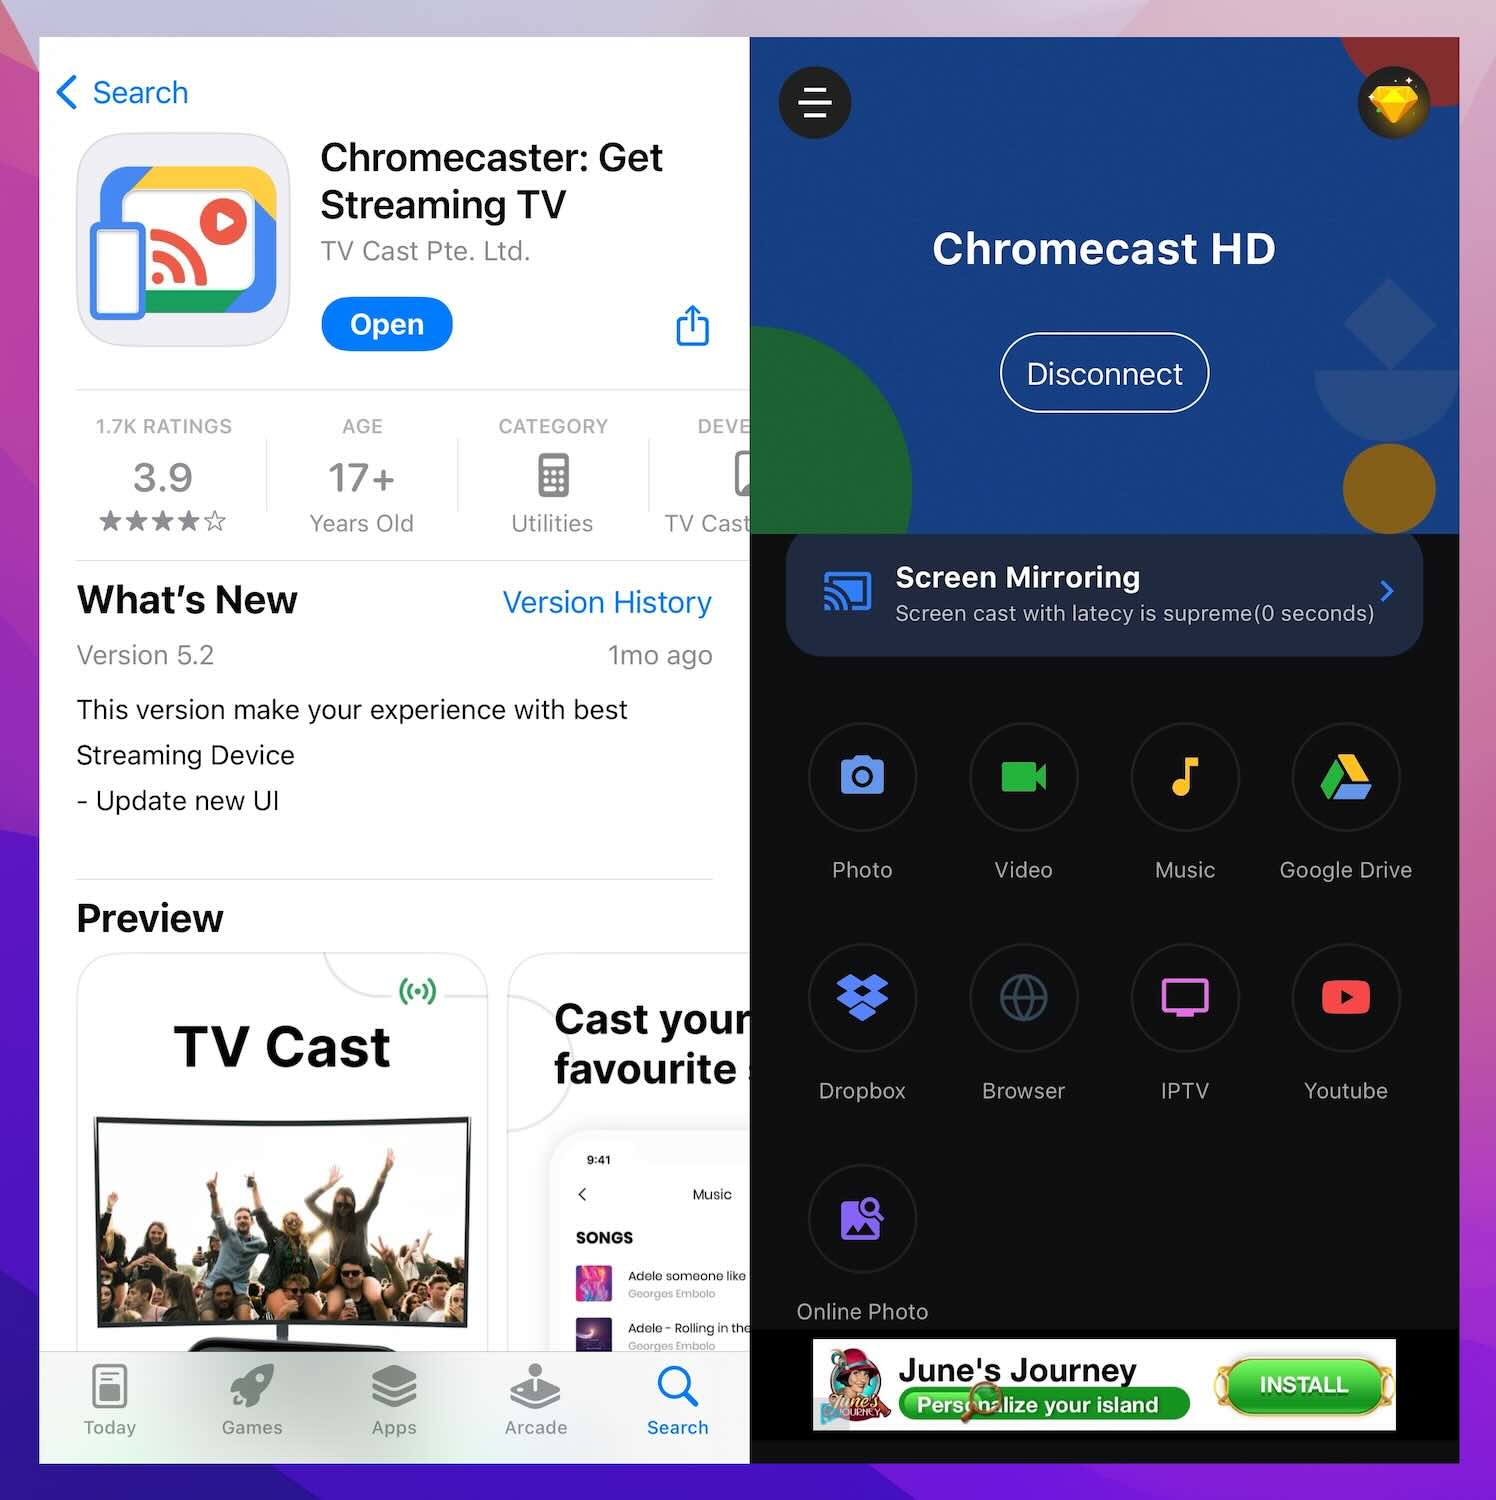 Chromecaster: Get Streaming TV